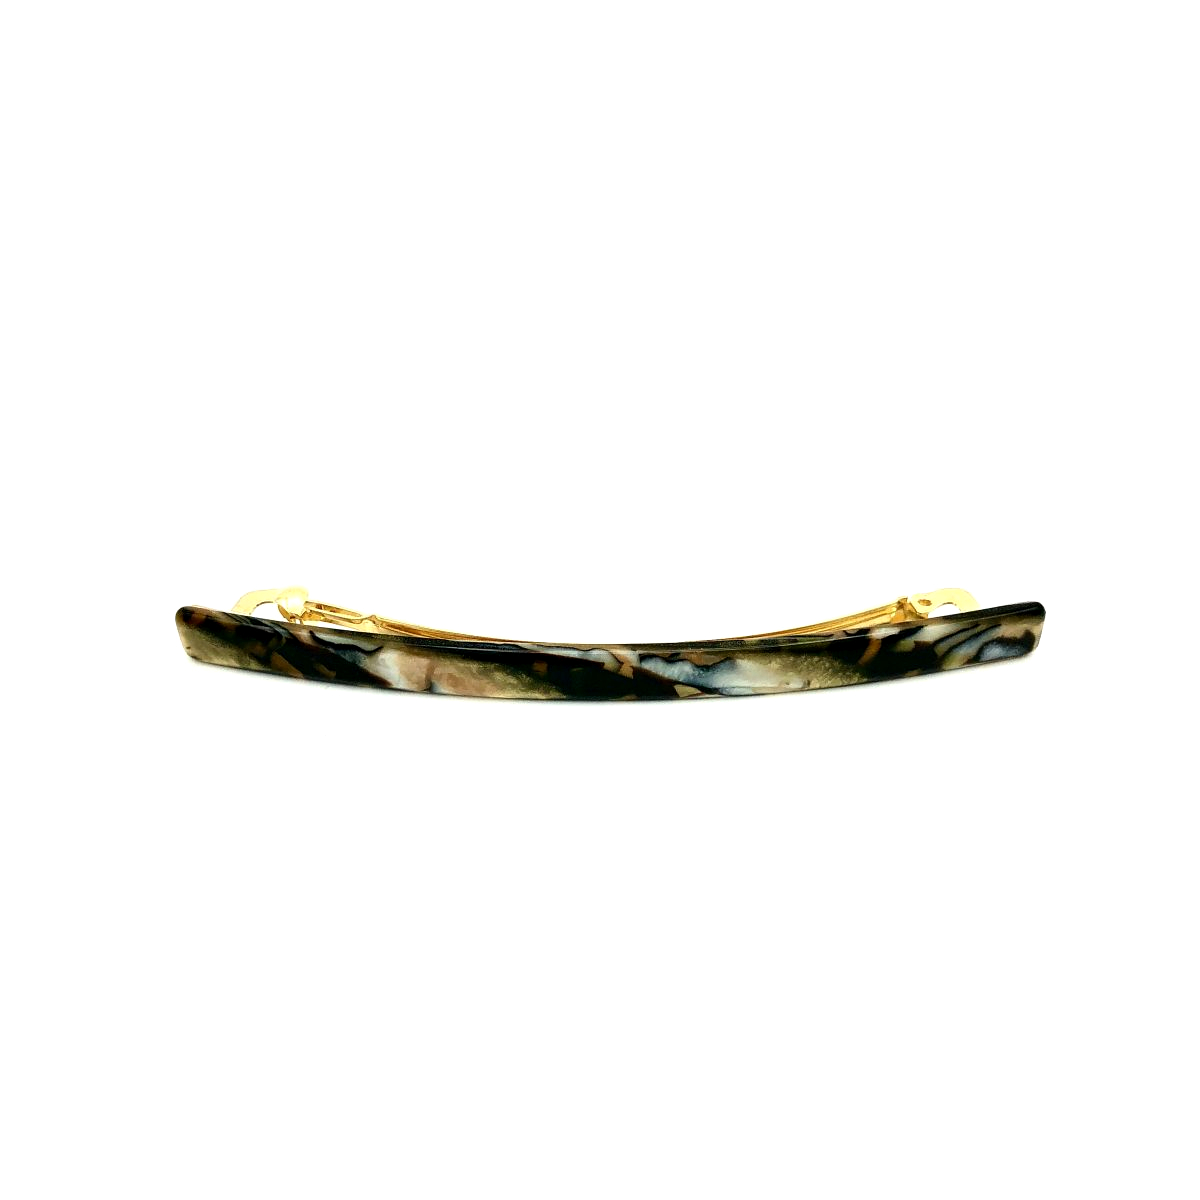 Haarspange gold/schwarz - lang, flach - 10,3 cm